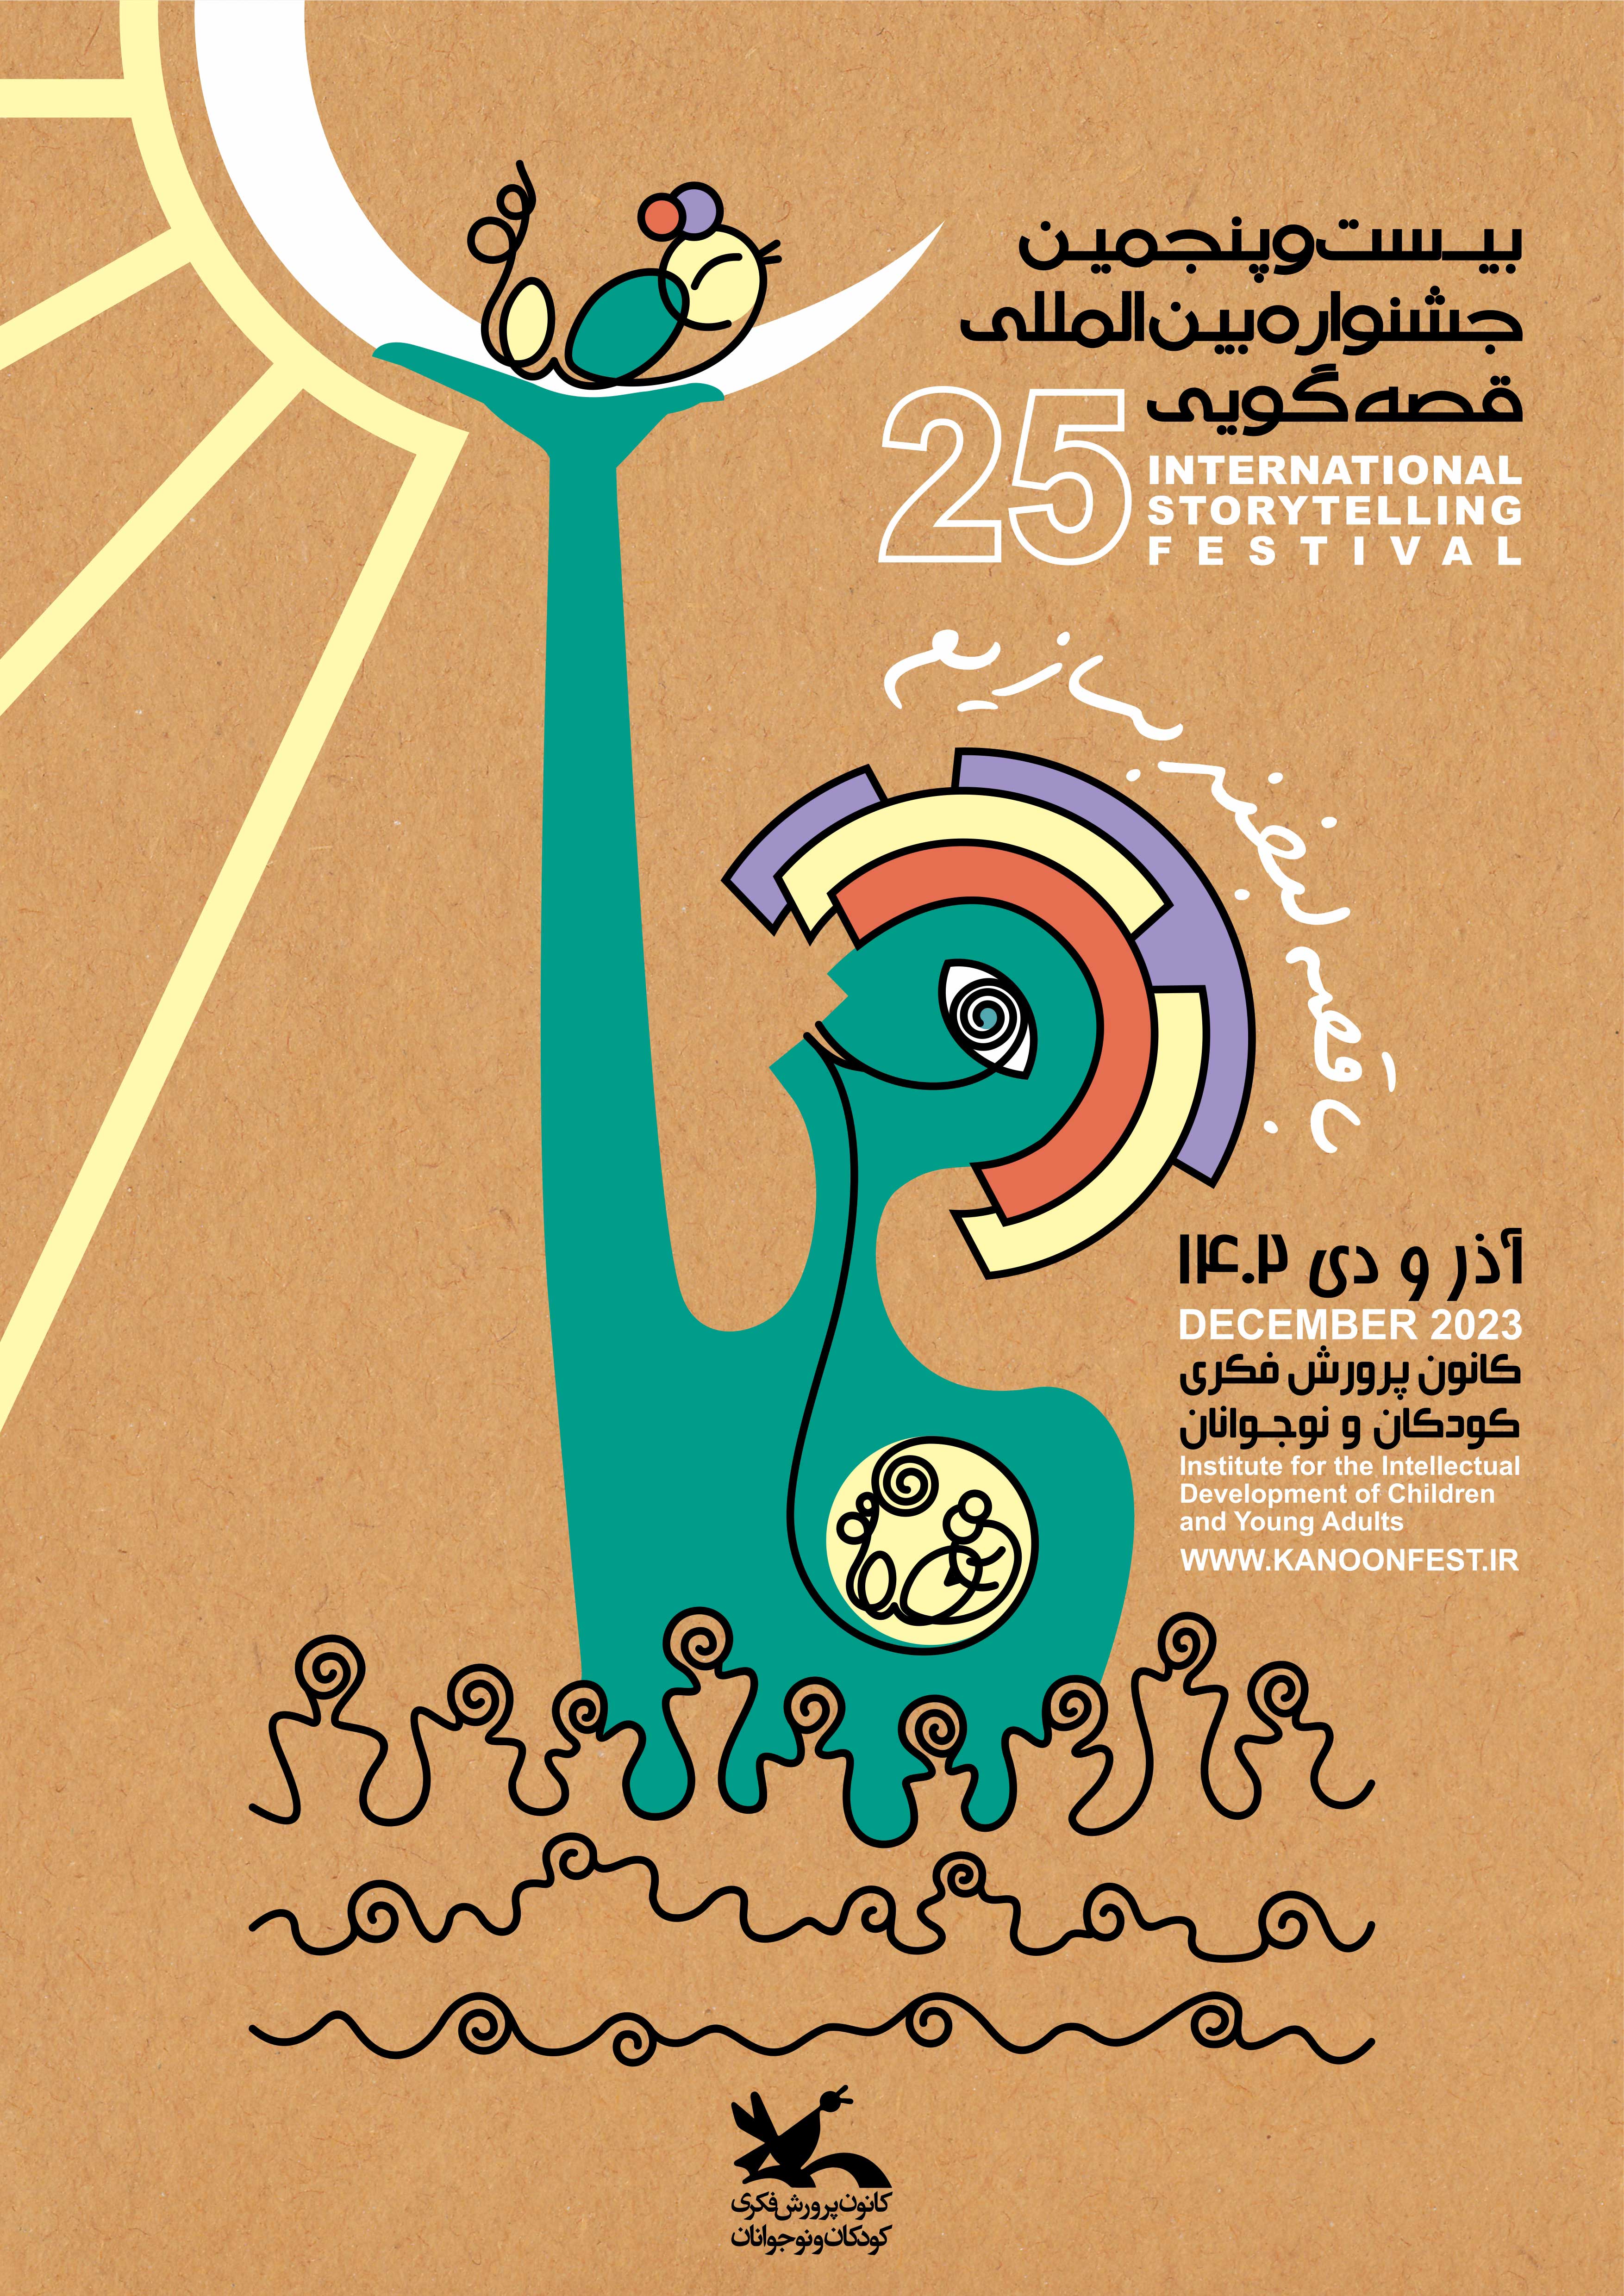 یزد، میزبان جشنواره بین المللی قصه گویی